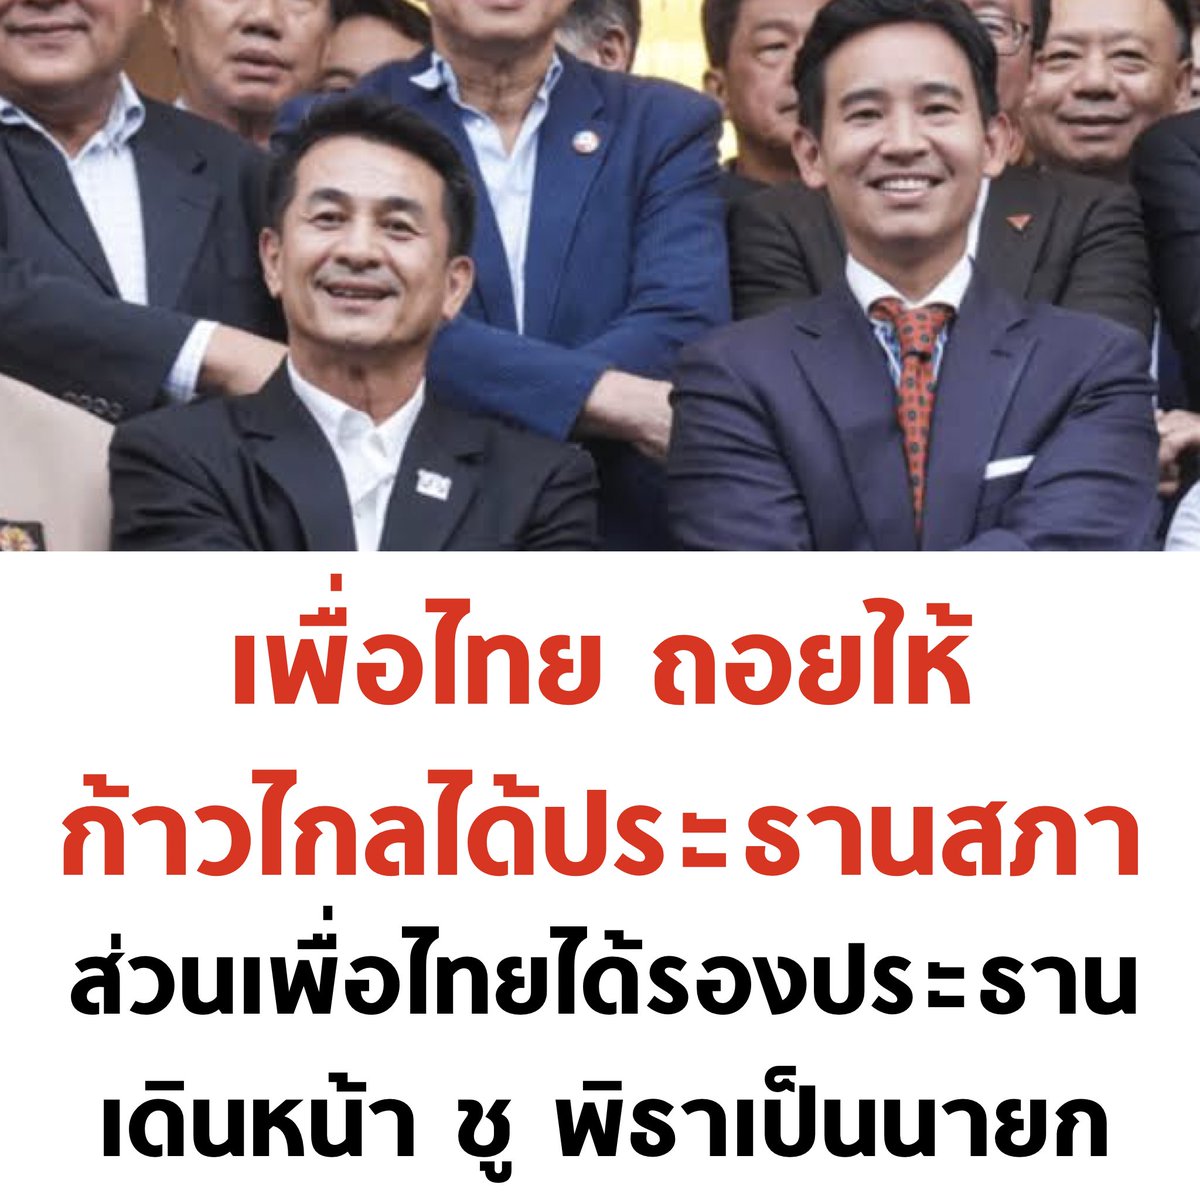 จับมือไว้แล้วไปด้วยกัน เอาชนะ 2 ลุงให้ได้ ตามความคาดหวังของประชาชน เป็นทางออกที่ดีที่สุดครับ 🧡❤️ #ประธานสภา #พรรคเพื่อไทย #พรรคก้าวไกล